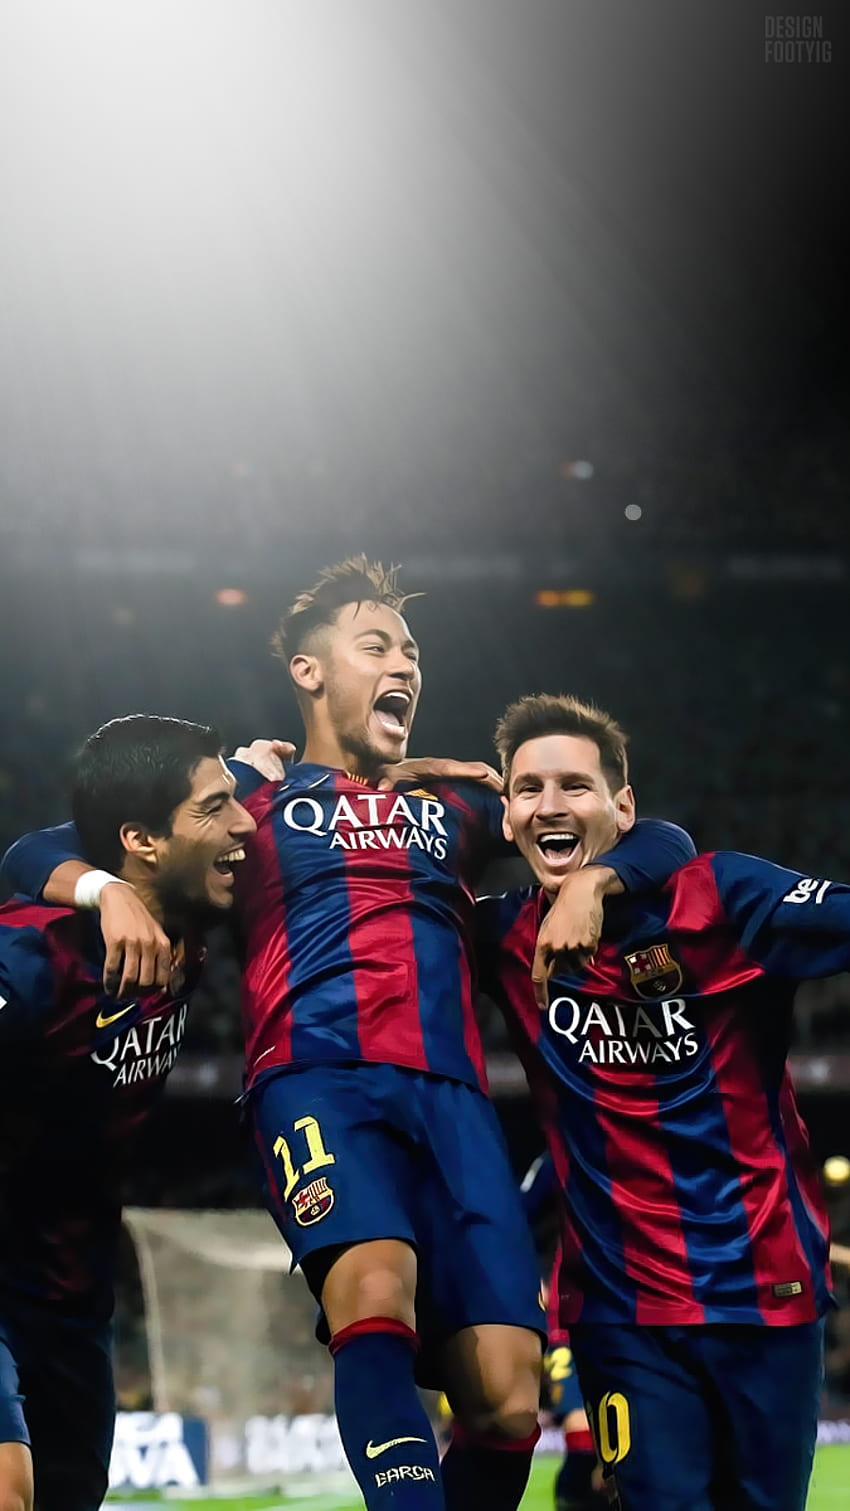 Điểm qua những bức ảnh HD với chủ đề Neymar Messi đầy chất lượng, sắc nét và sống động để làm mới màn hình điện thoại của bạn trong chớp mắt!